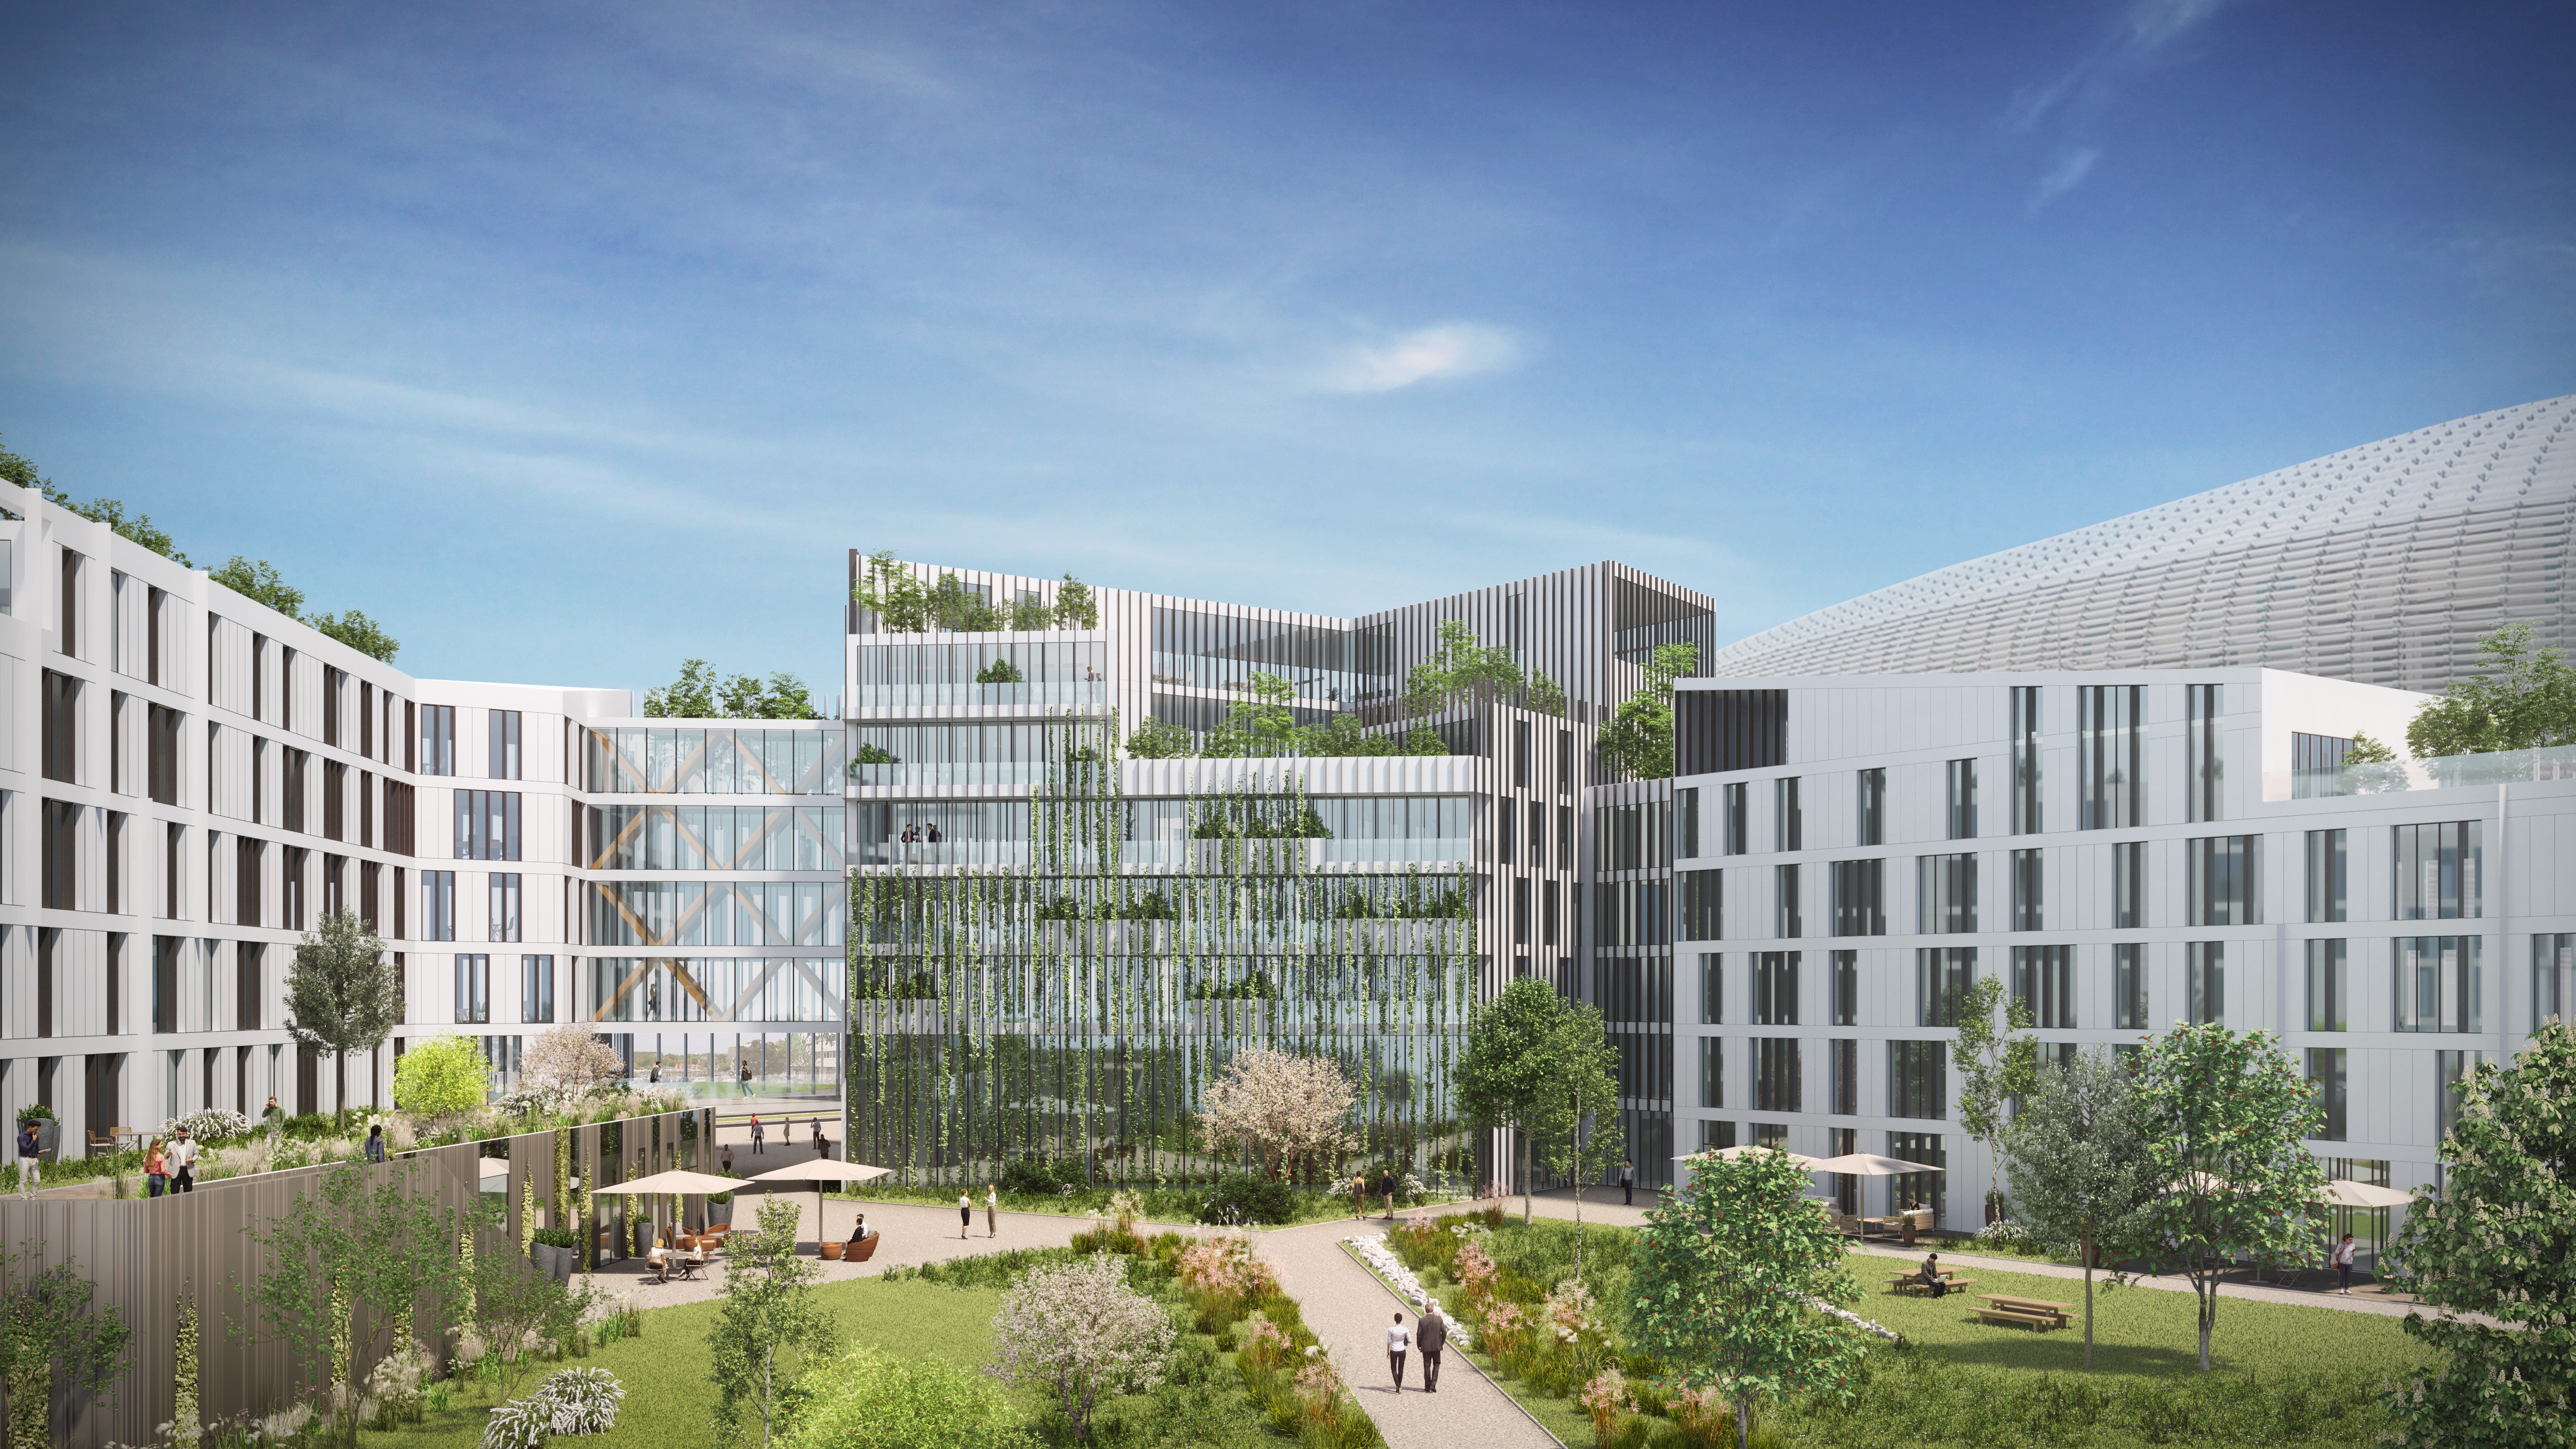 L'immeuble Hope à Villeneuve d'Ascq. Vendu en 2021,  il est en cours de commercialisation, avec une livraison prévue en 2023.